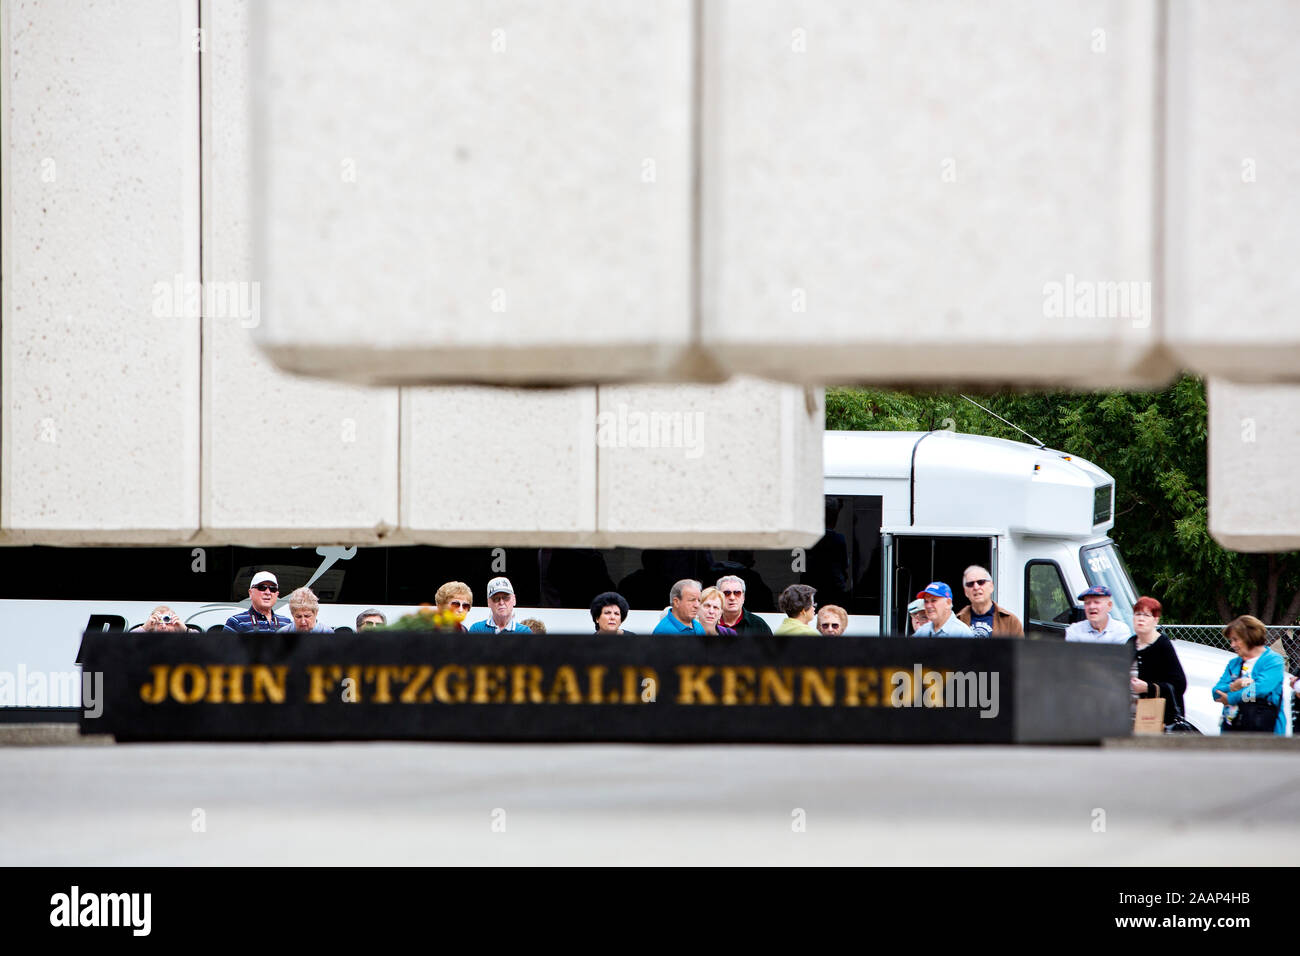 Touristen am John Fitzgerald Kennedy Memorial, ein Denkmal im West End Viertel von Dallas. Das Denkmal wurde 1970 erectred und wurde von dem Architekten Philip Johnson entworfen. Das Denkmal ist etwa 180 Meter von der Dealey Plaza, wo US-Präsident John F. Kennedy ermordet wurde. Stockfoto